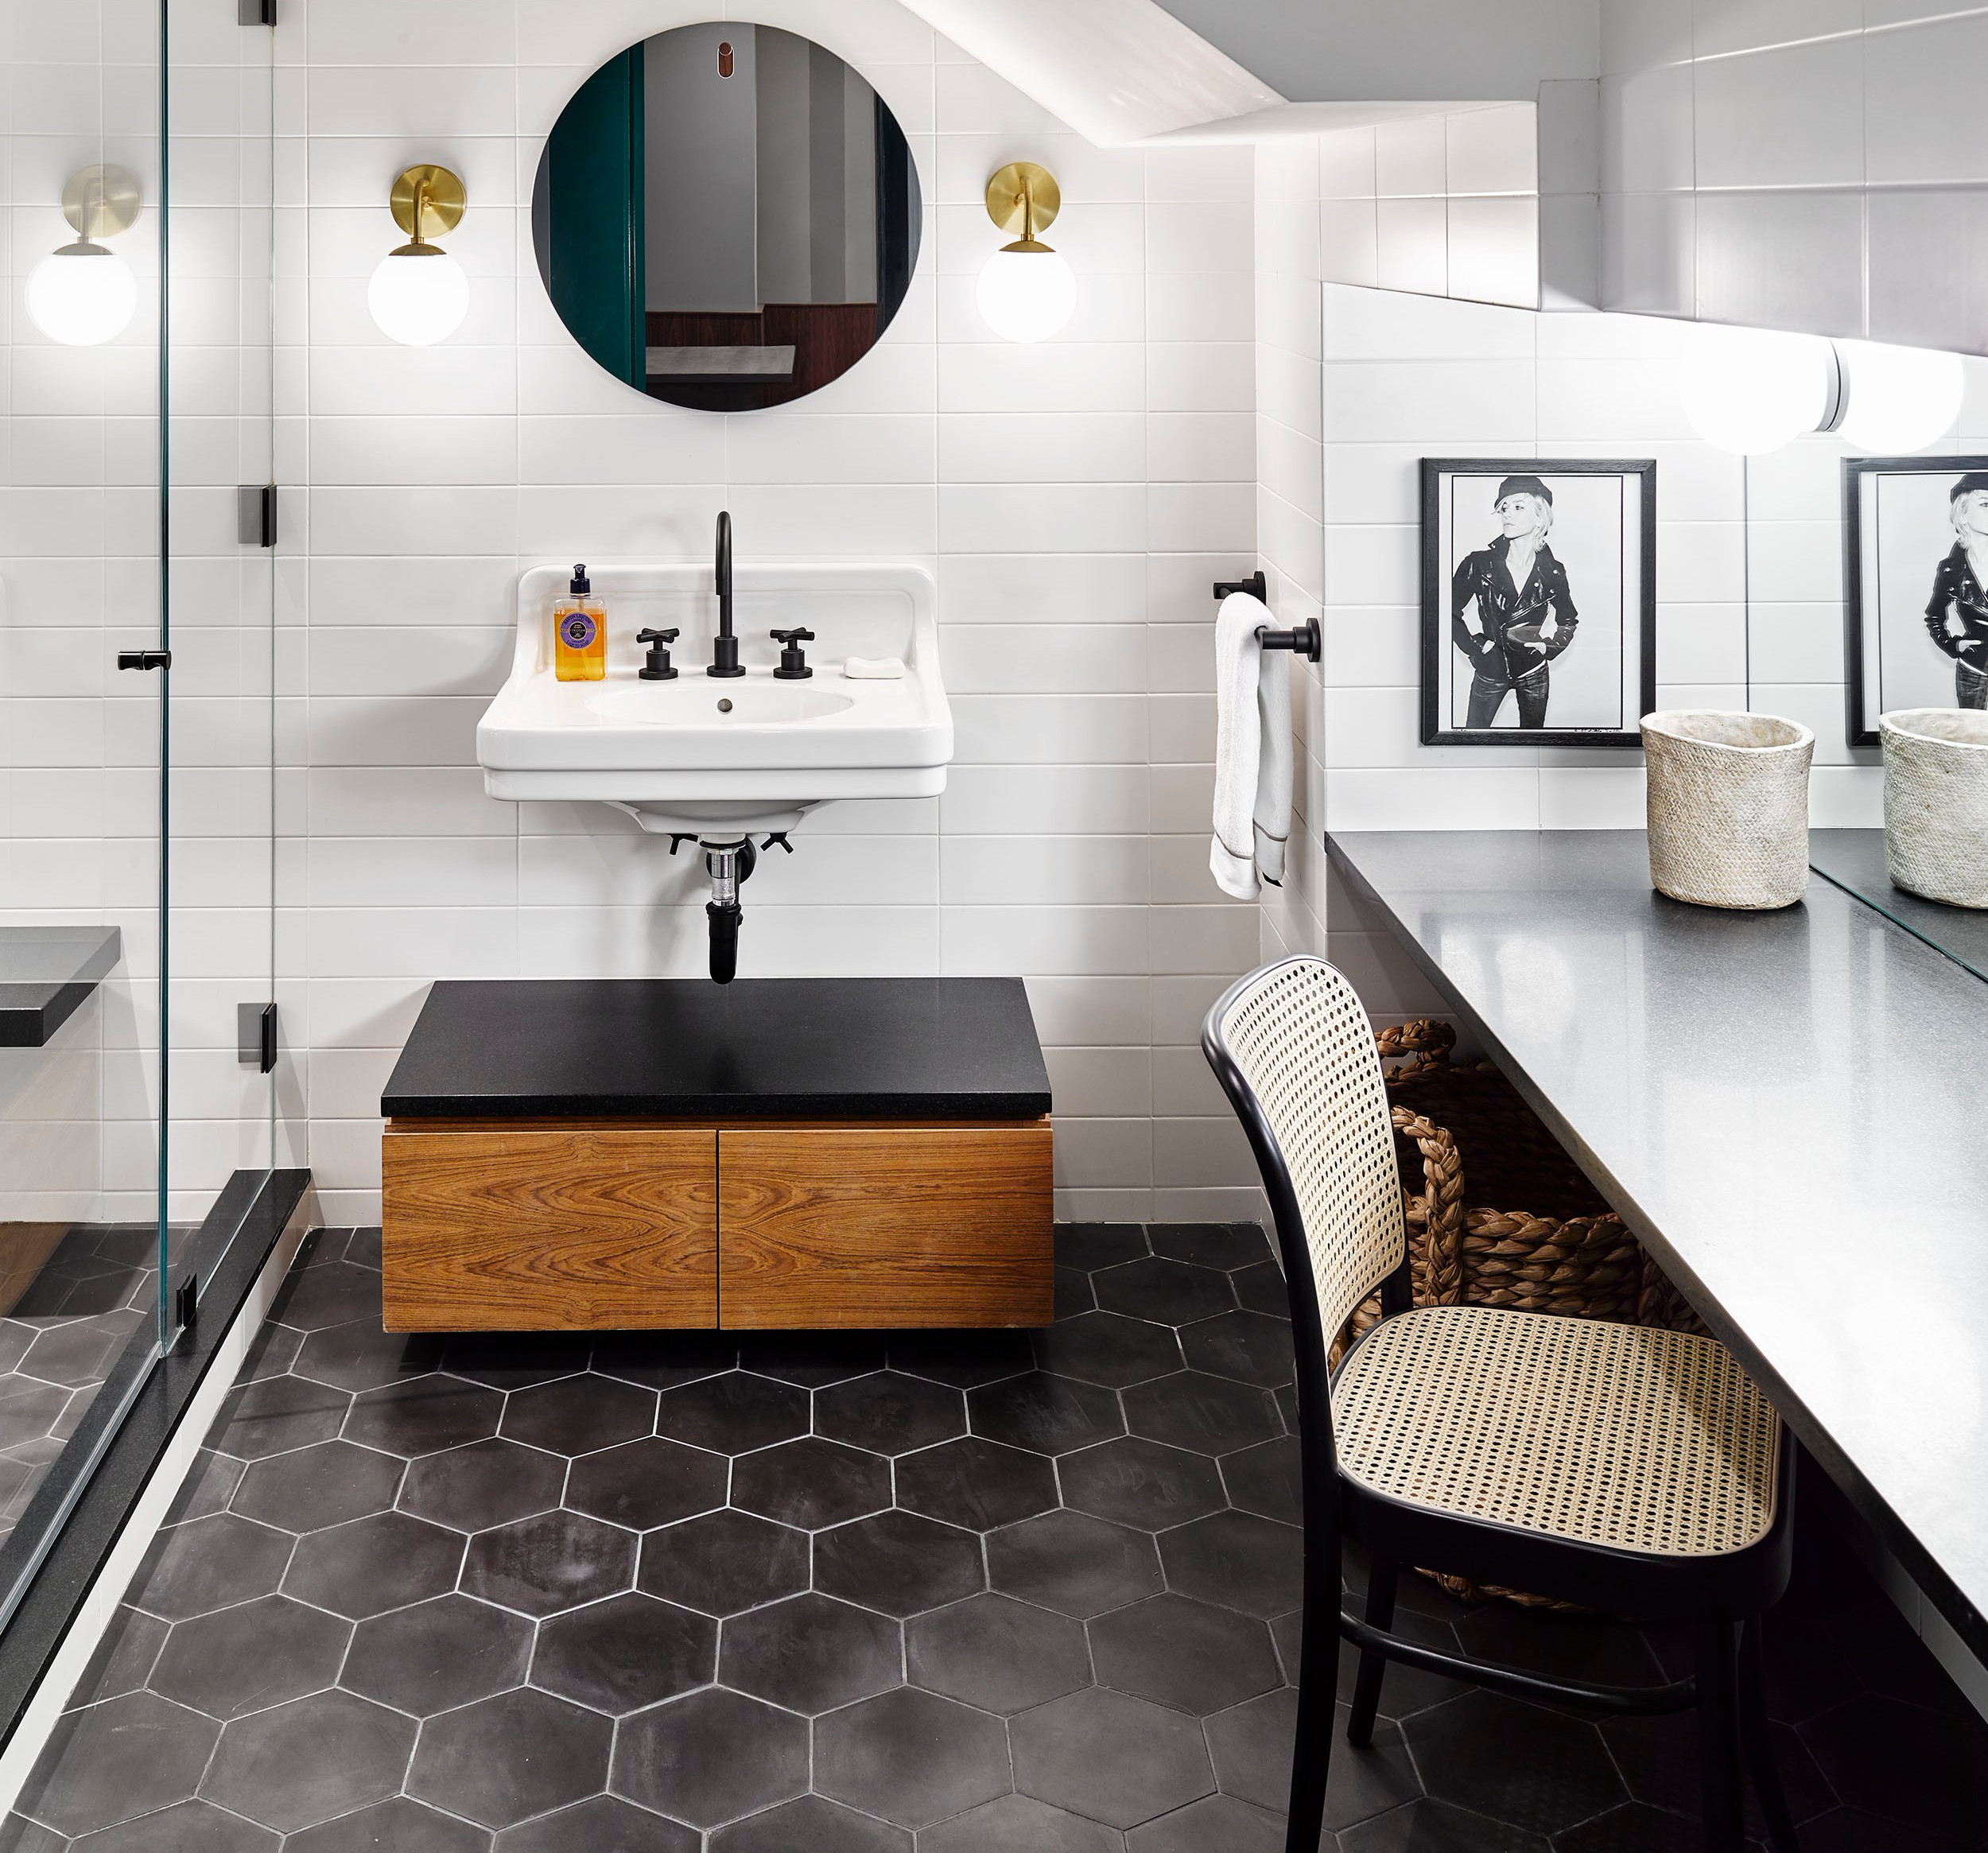 desain keramik kamar mandi minimalis hitam putih rumah